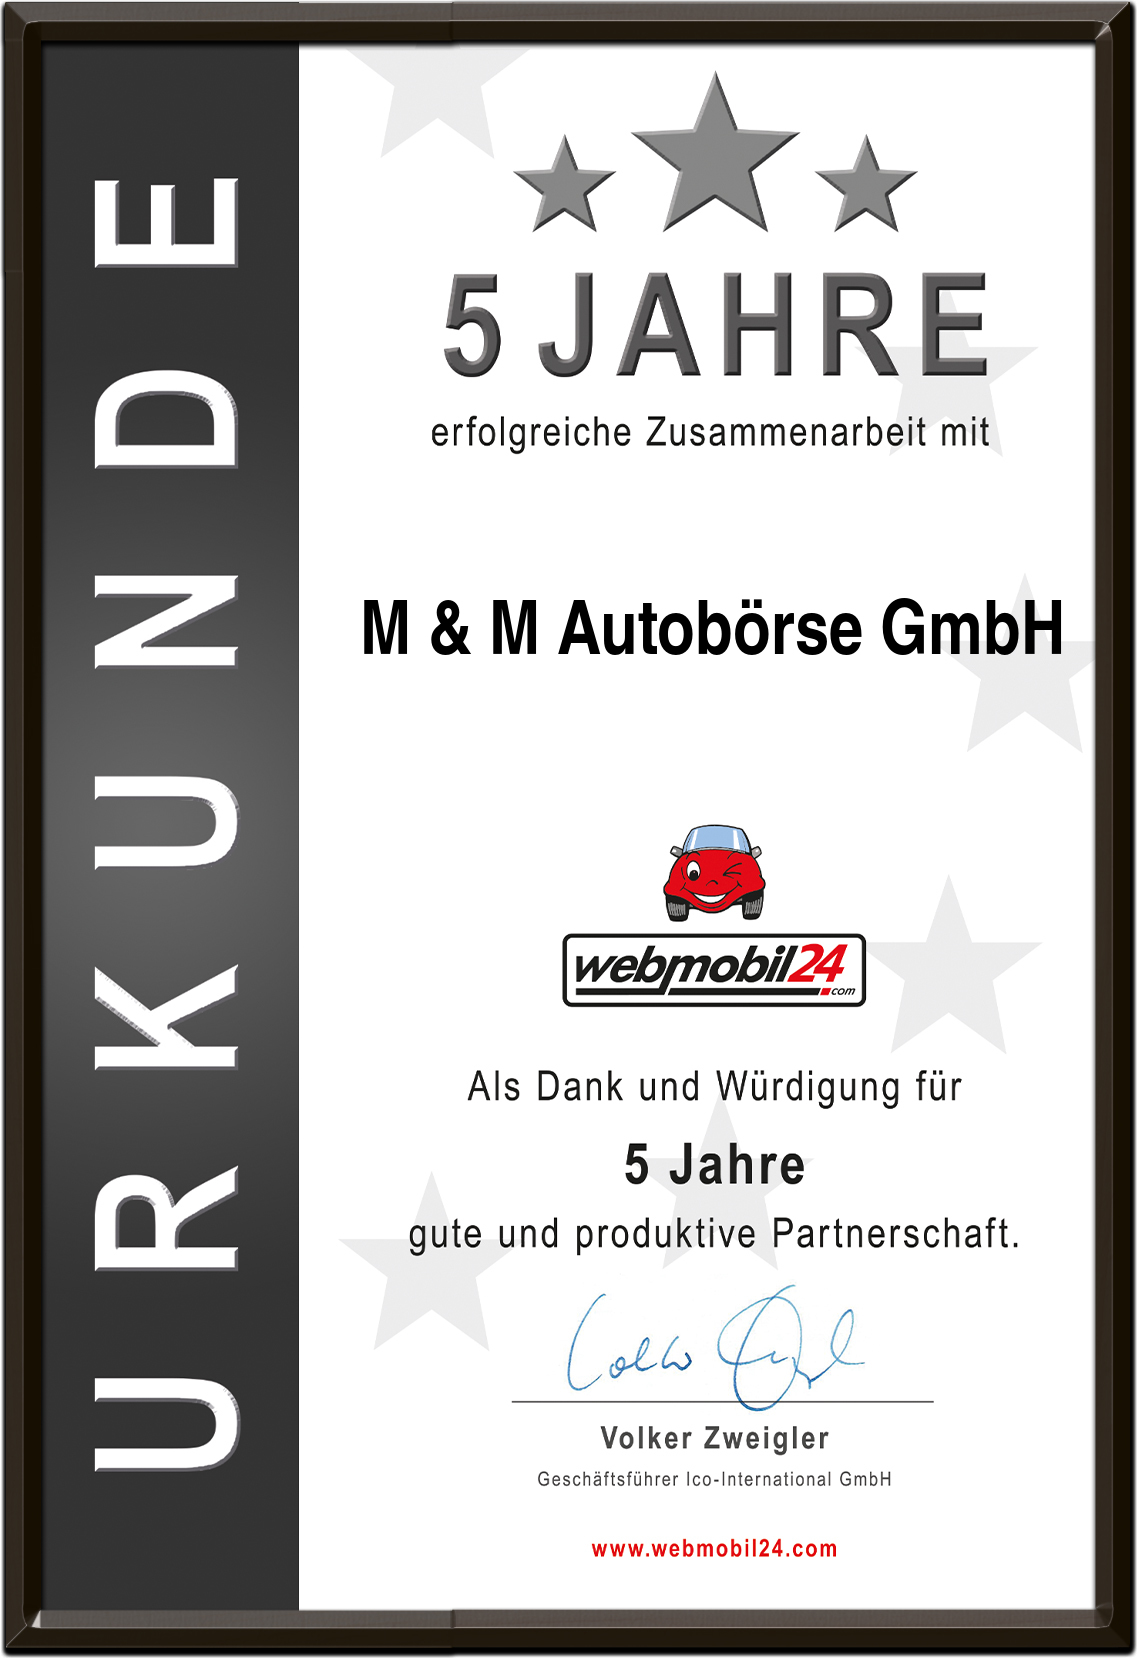 M & M Autobörse GmbH